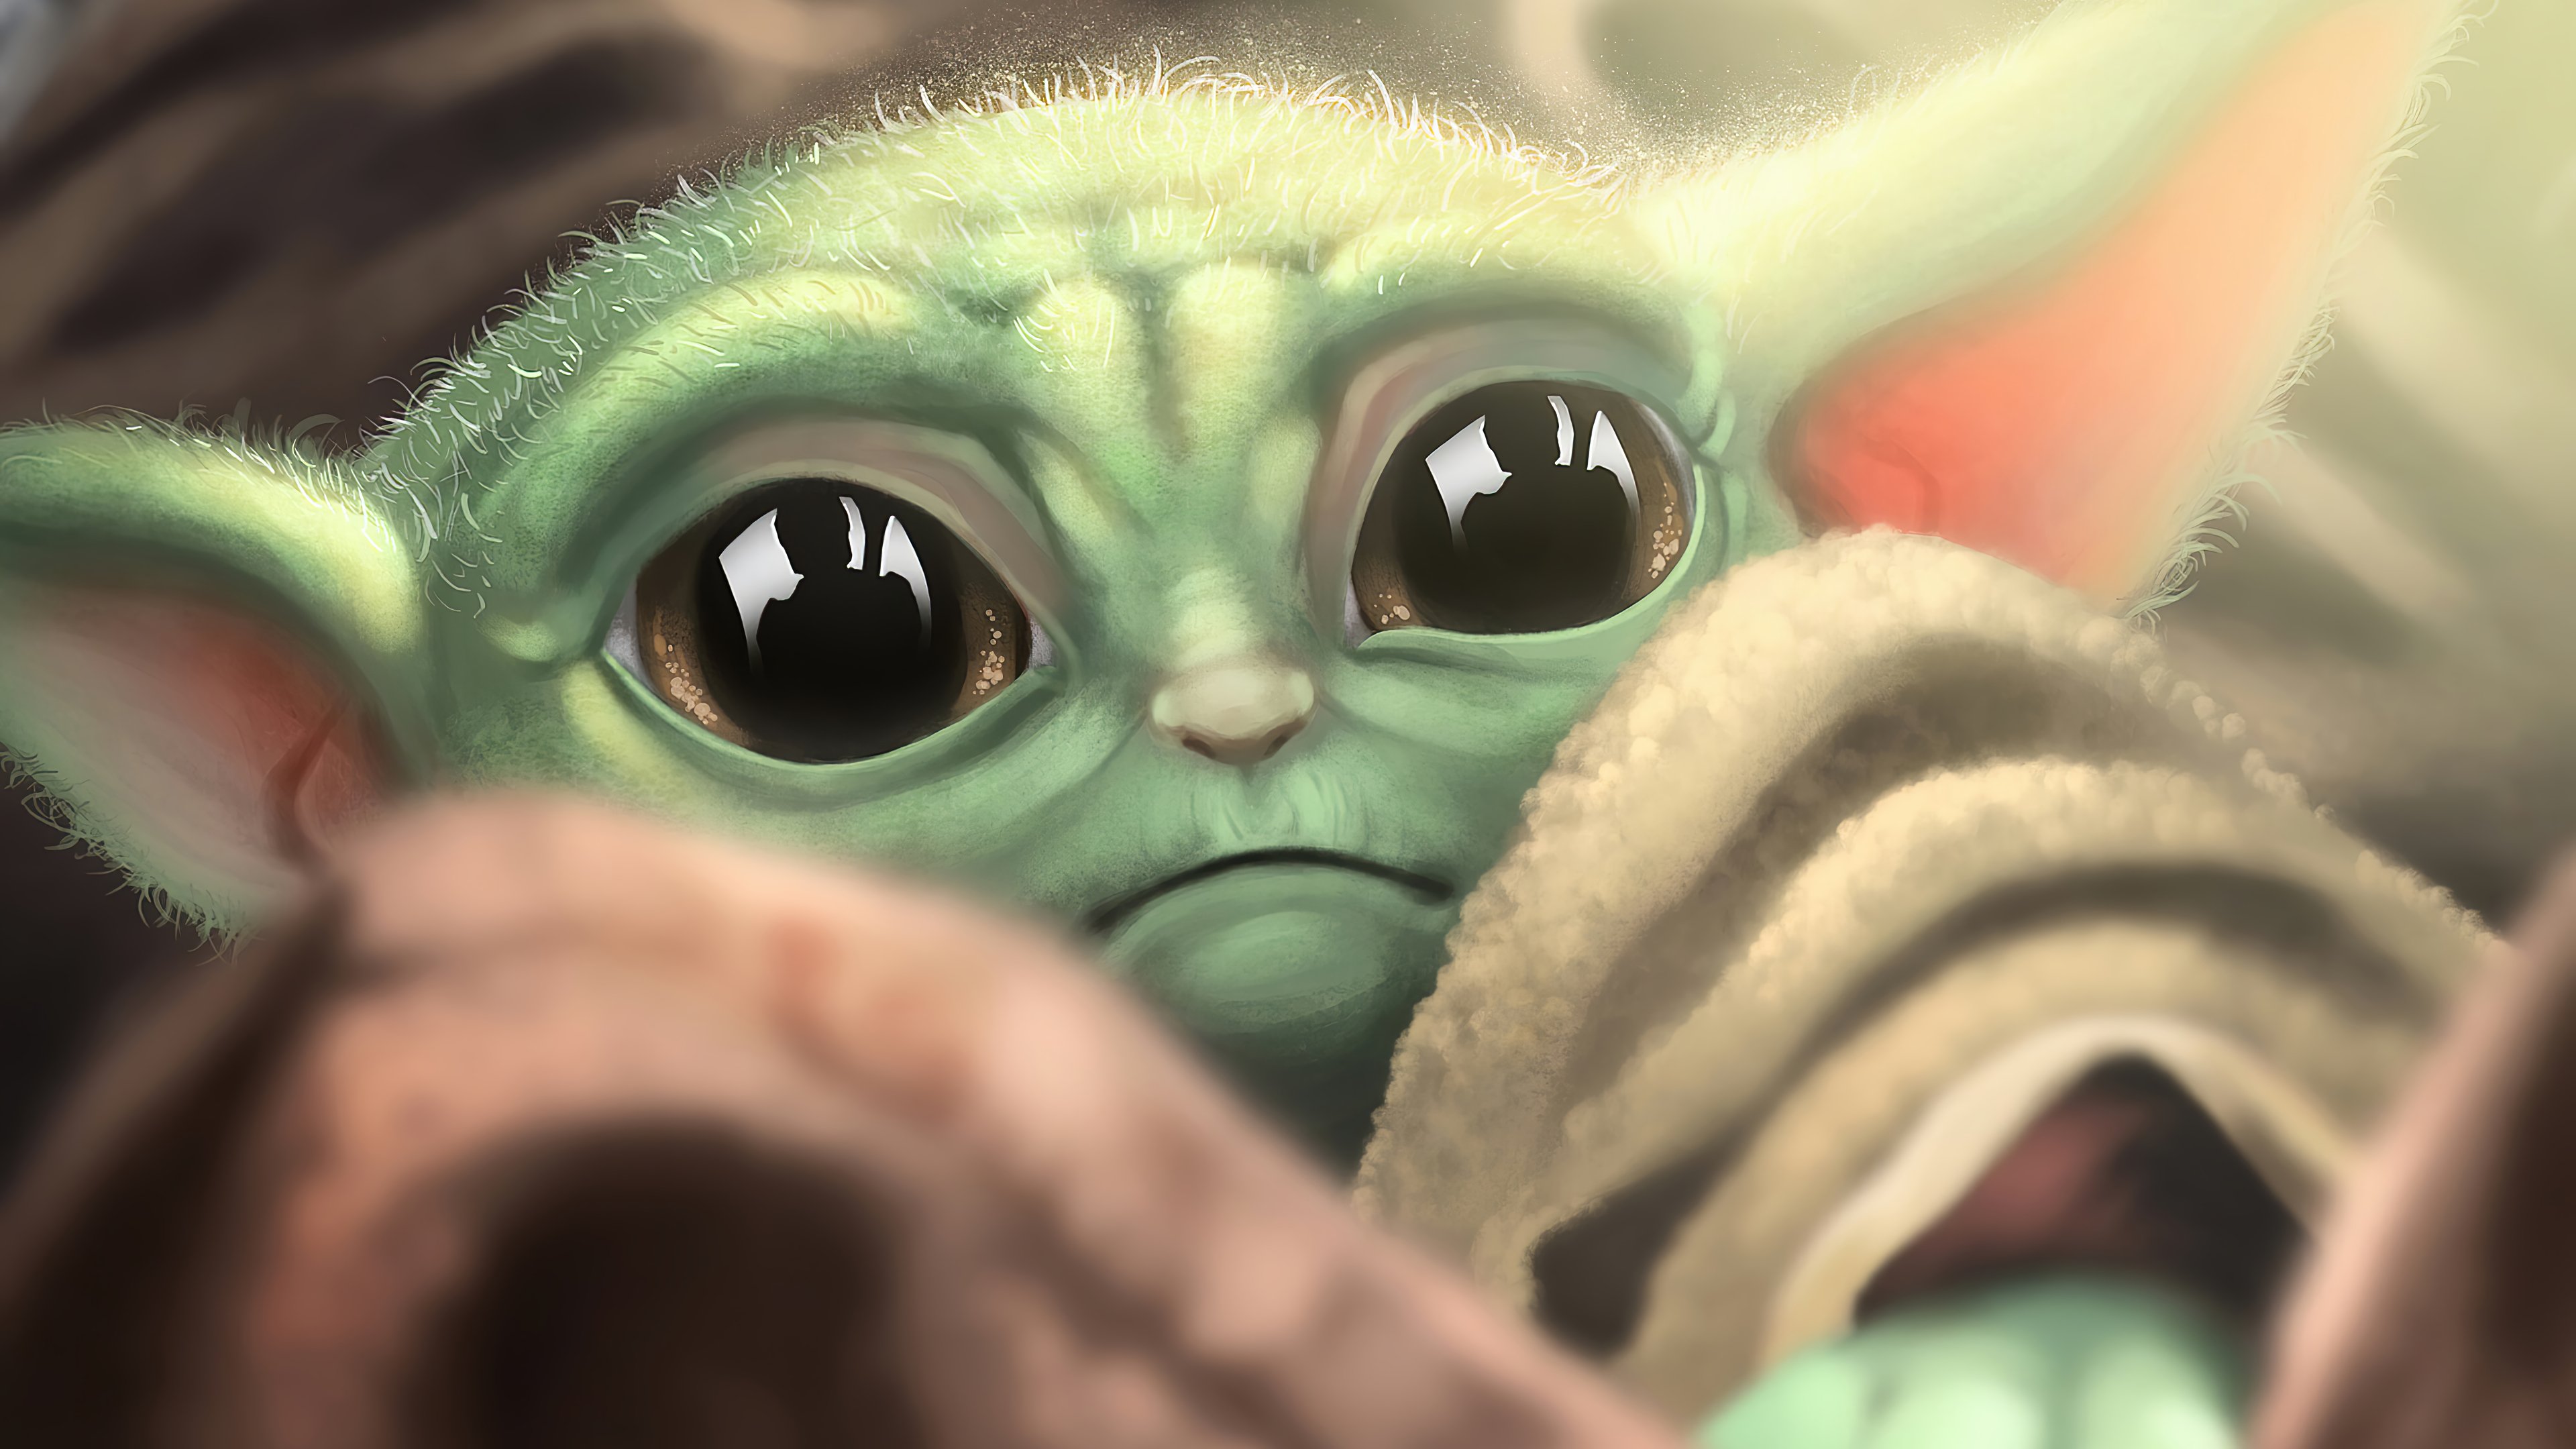 Fondos de pantalla Yoda bebé triste